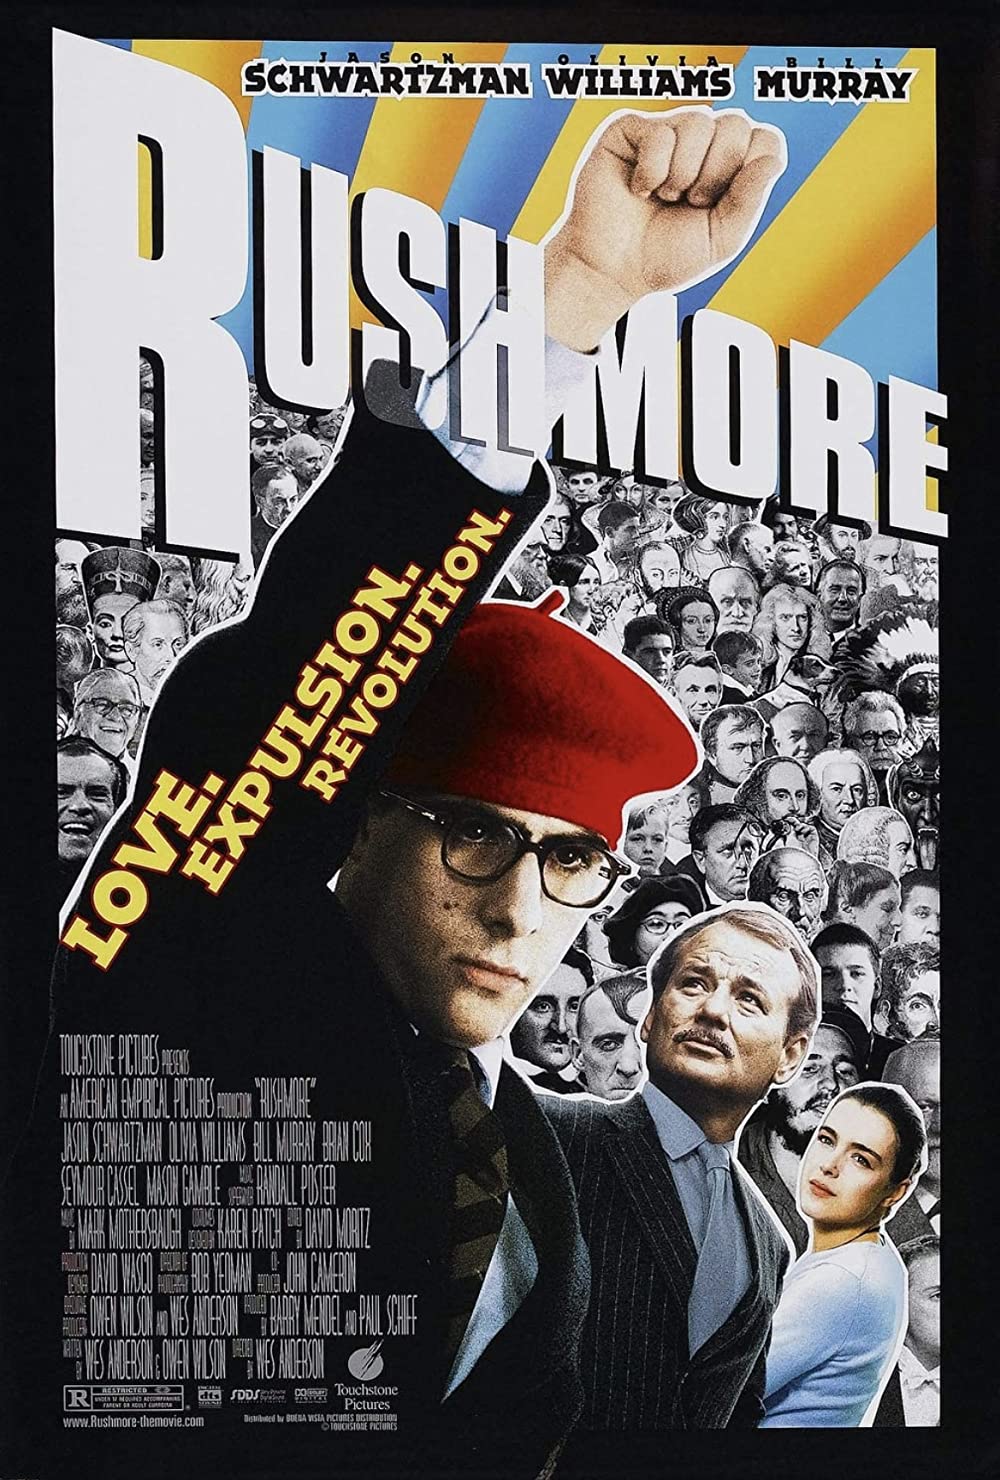 Filmbeschreibung zu Rushmore (OV)